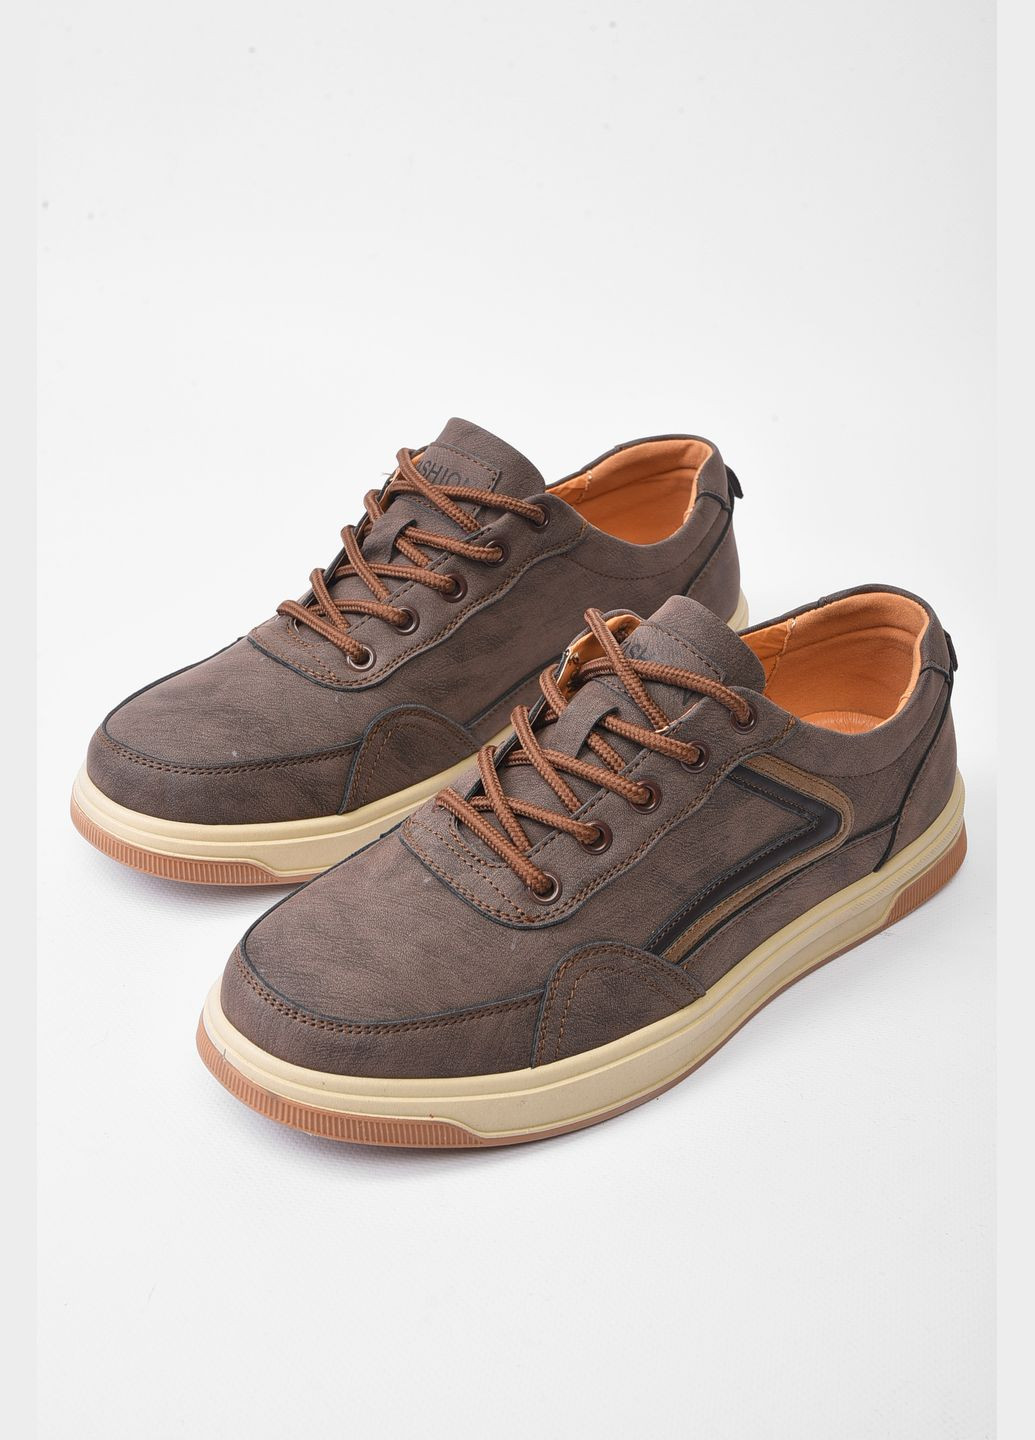 Коричневые демисезонные кроссовки мужские коричневого цвета на шнуровке Let's Shop